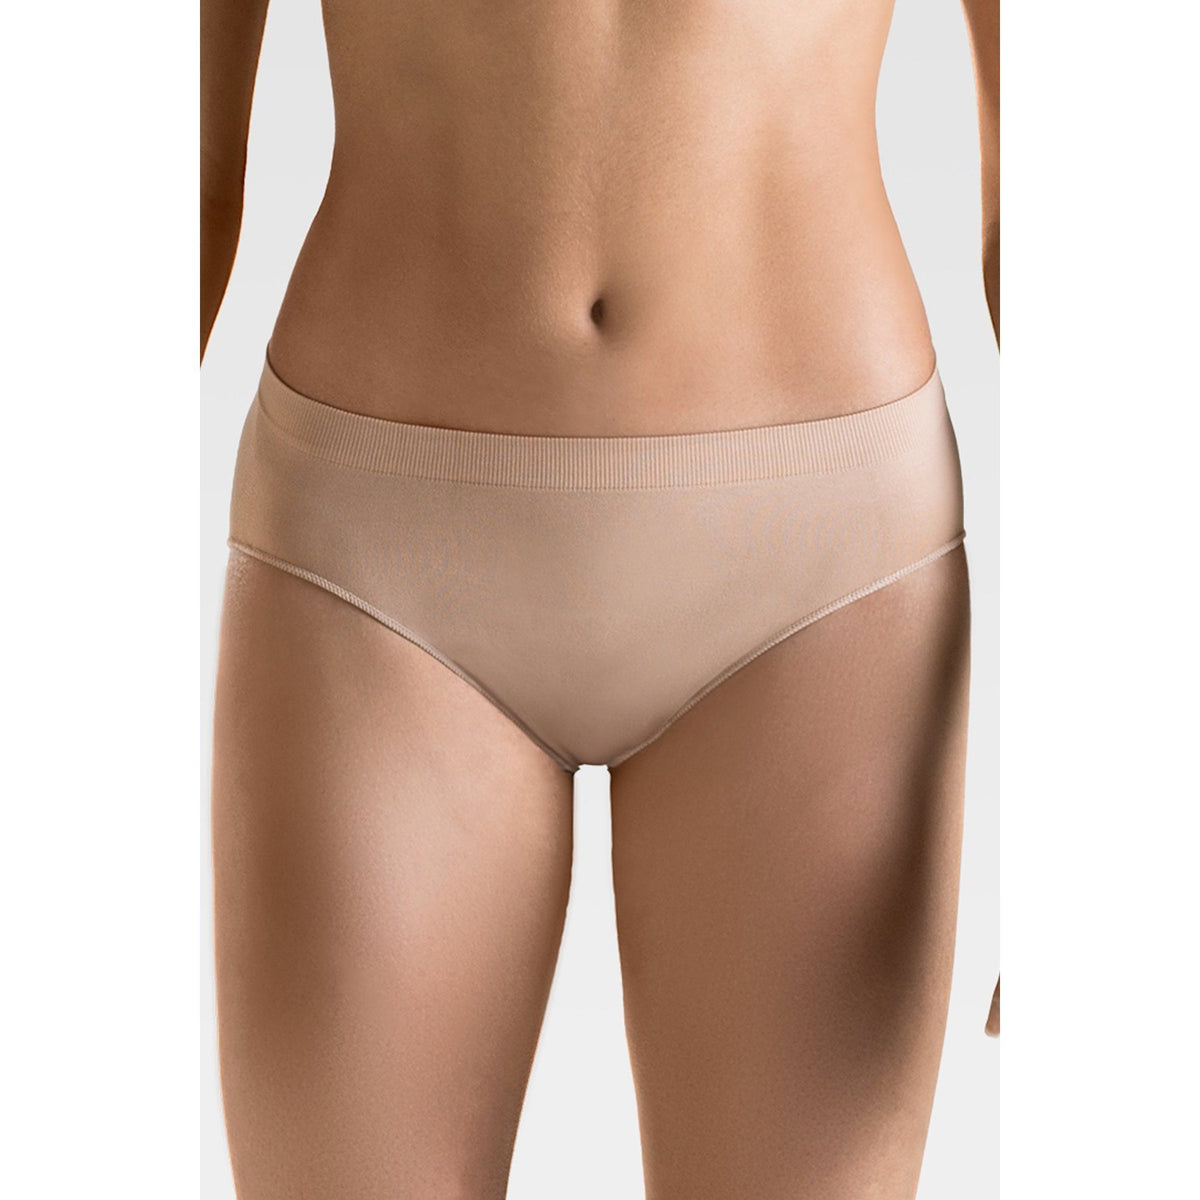 Nude Seamless High Cut Ballet Dance Underwear Briefs Pants